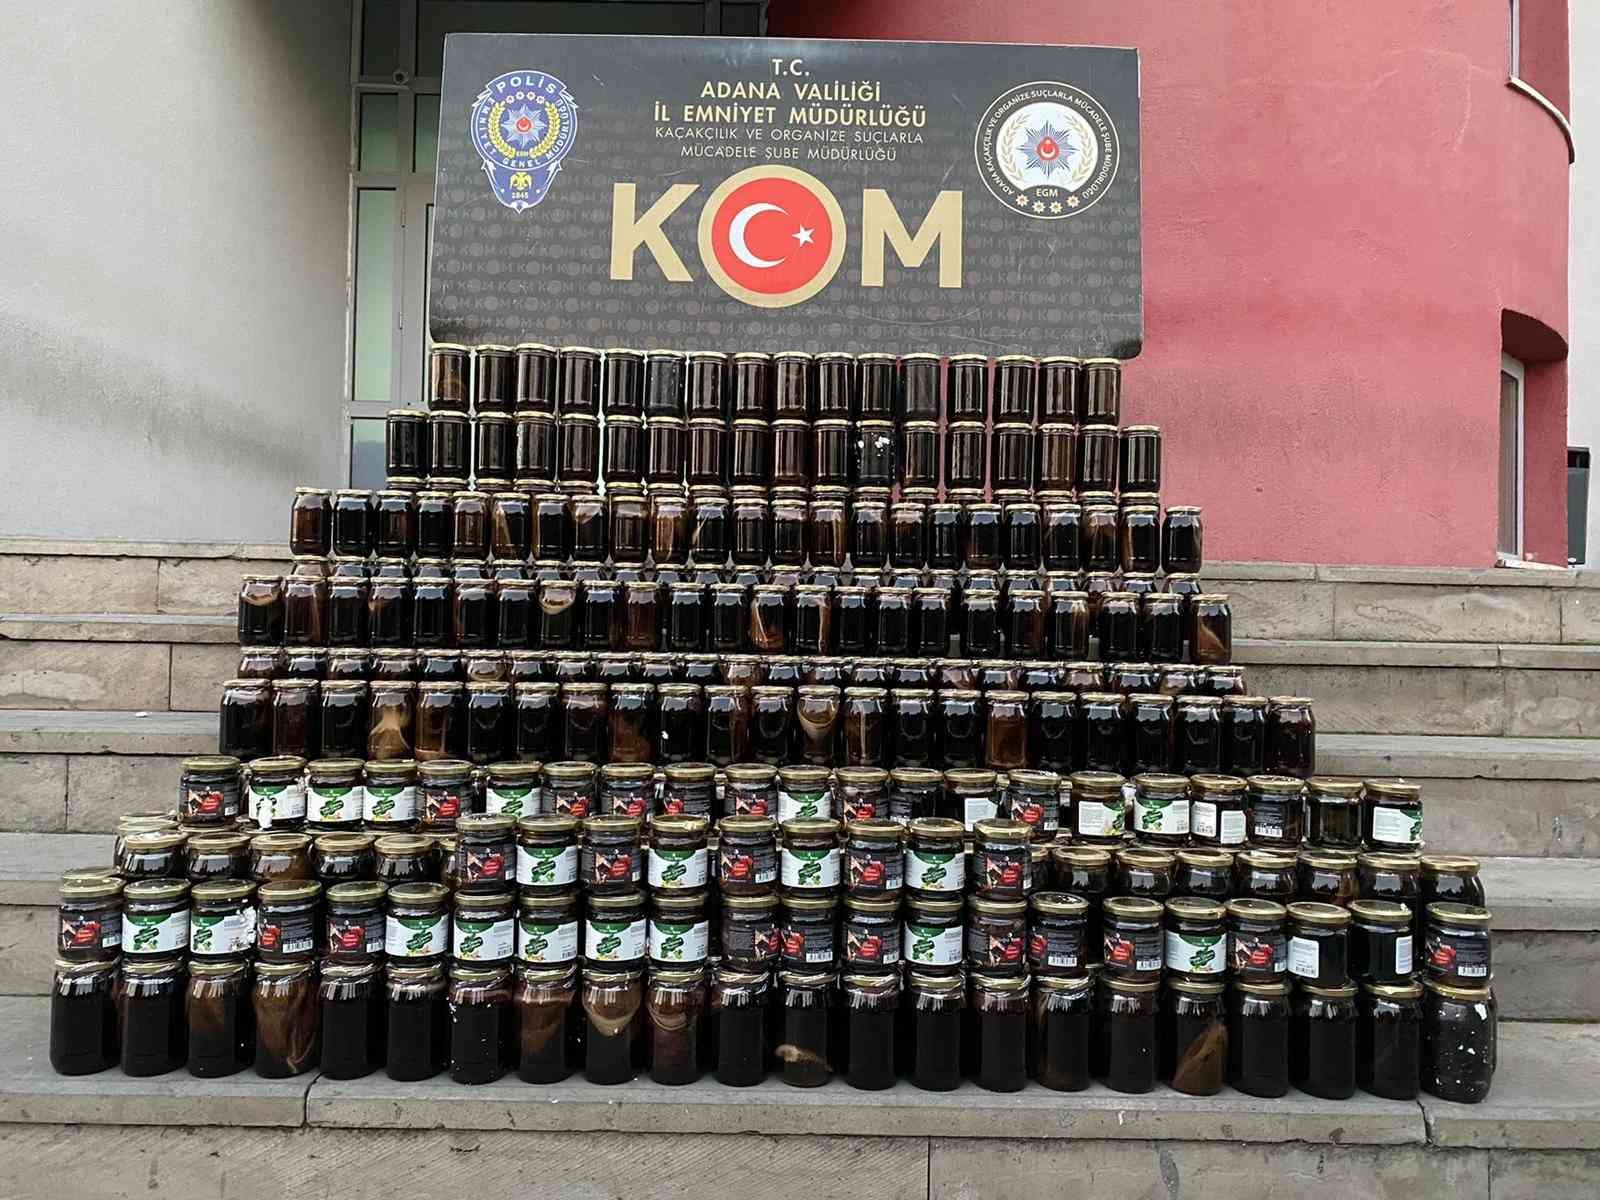 Adana’da sahte içki ve cinsel içerikli ürünler ele geçirildi: 13 gözaltı #adana